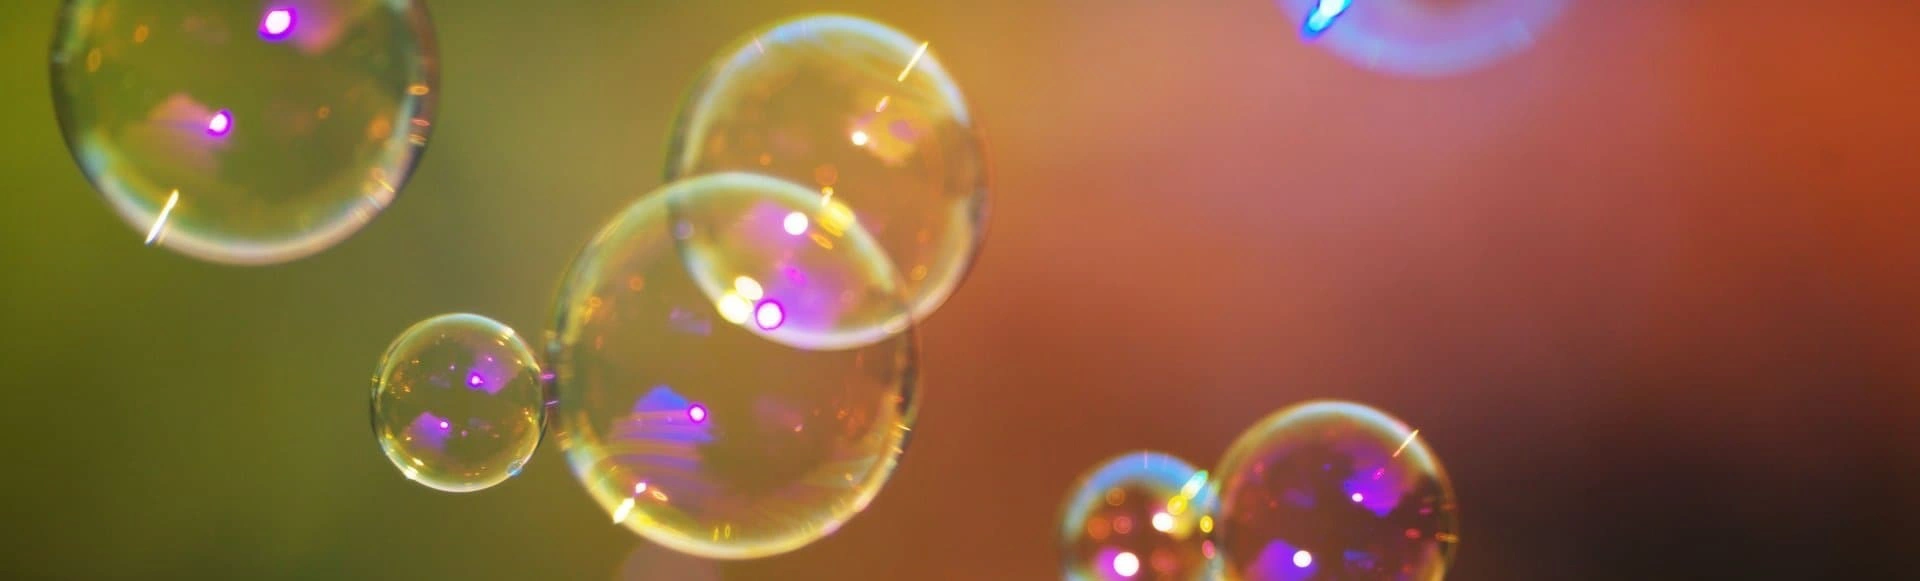 Трансформеры на планете мыльных пузырей